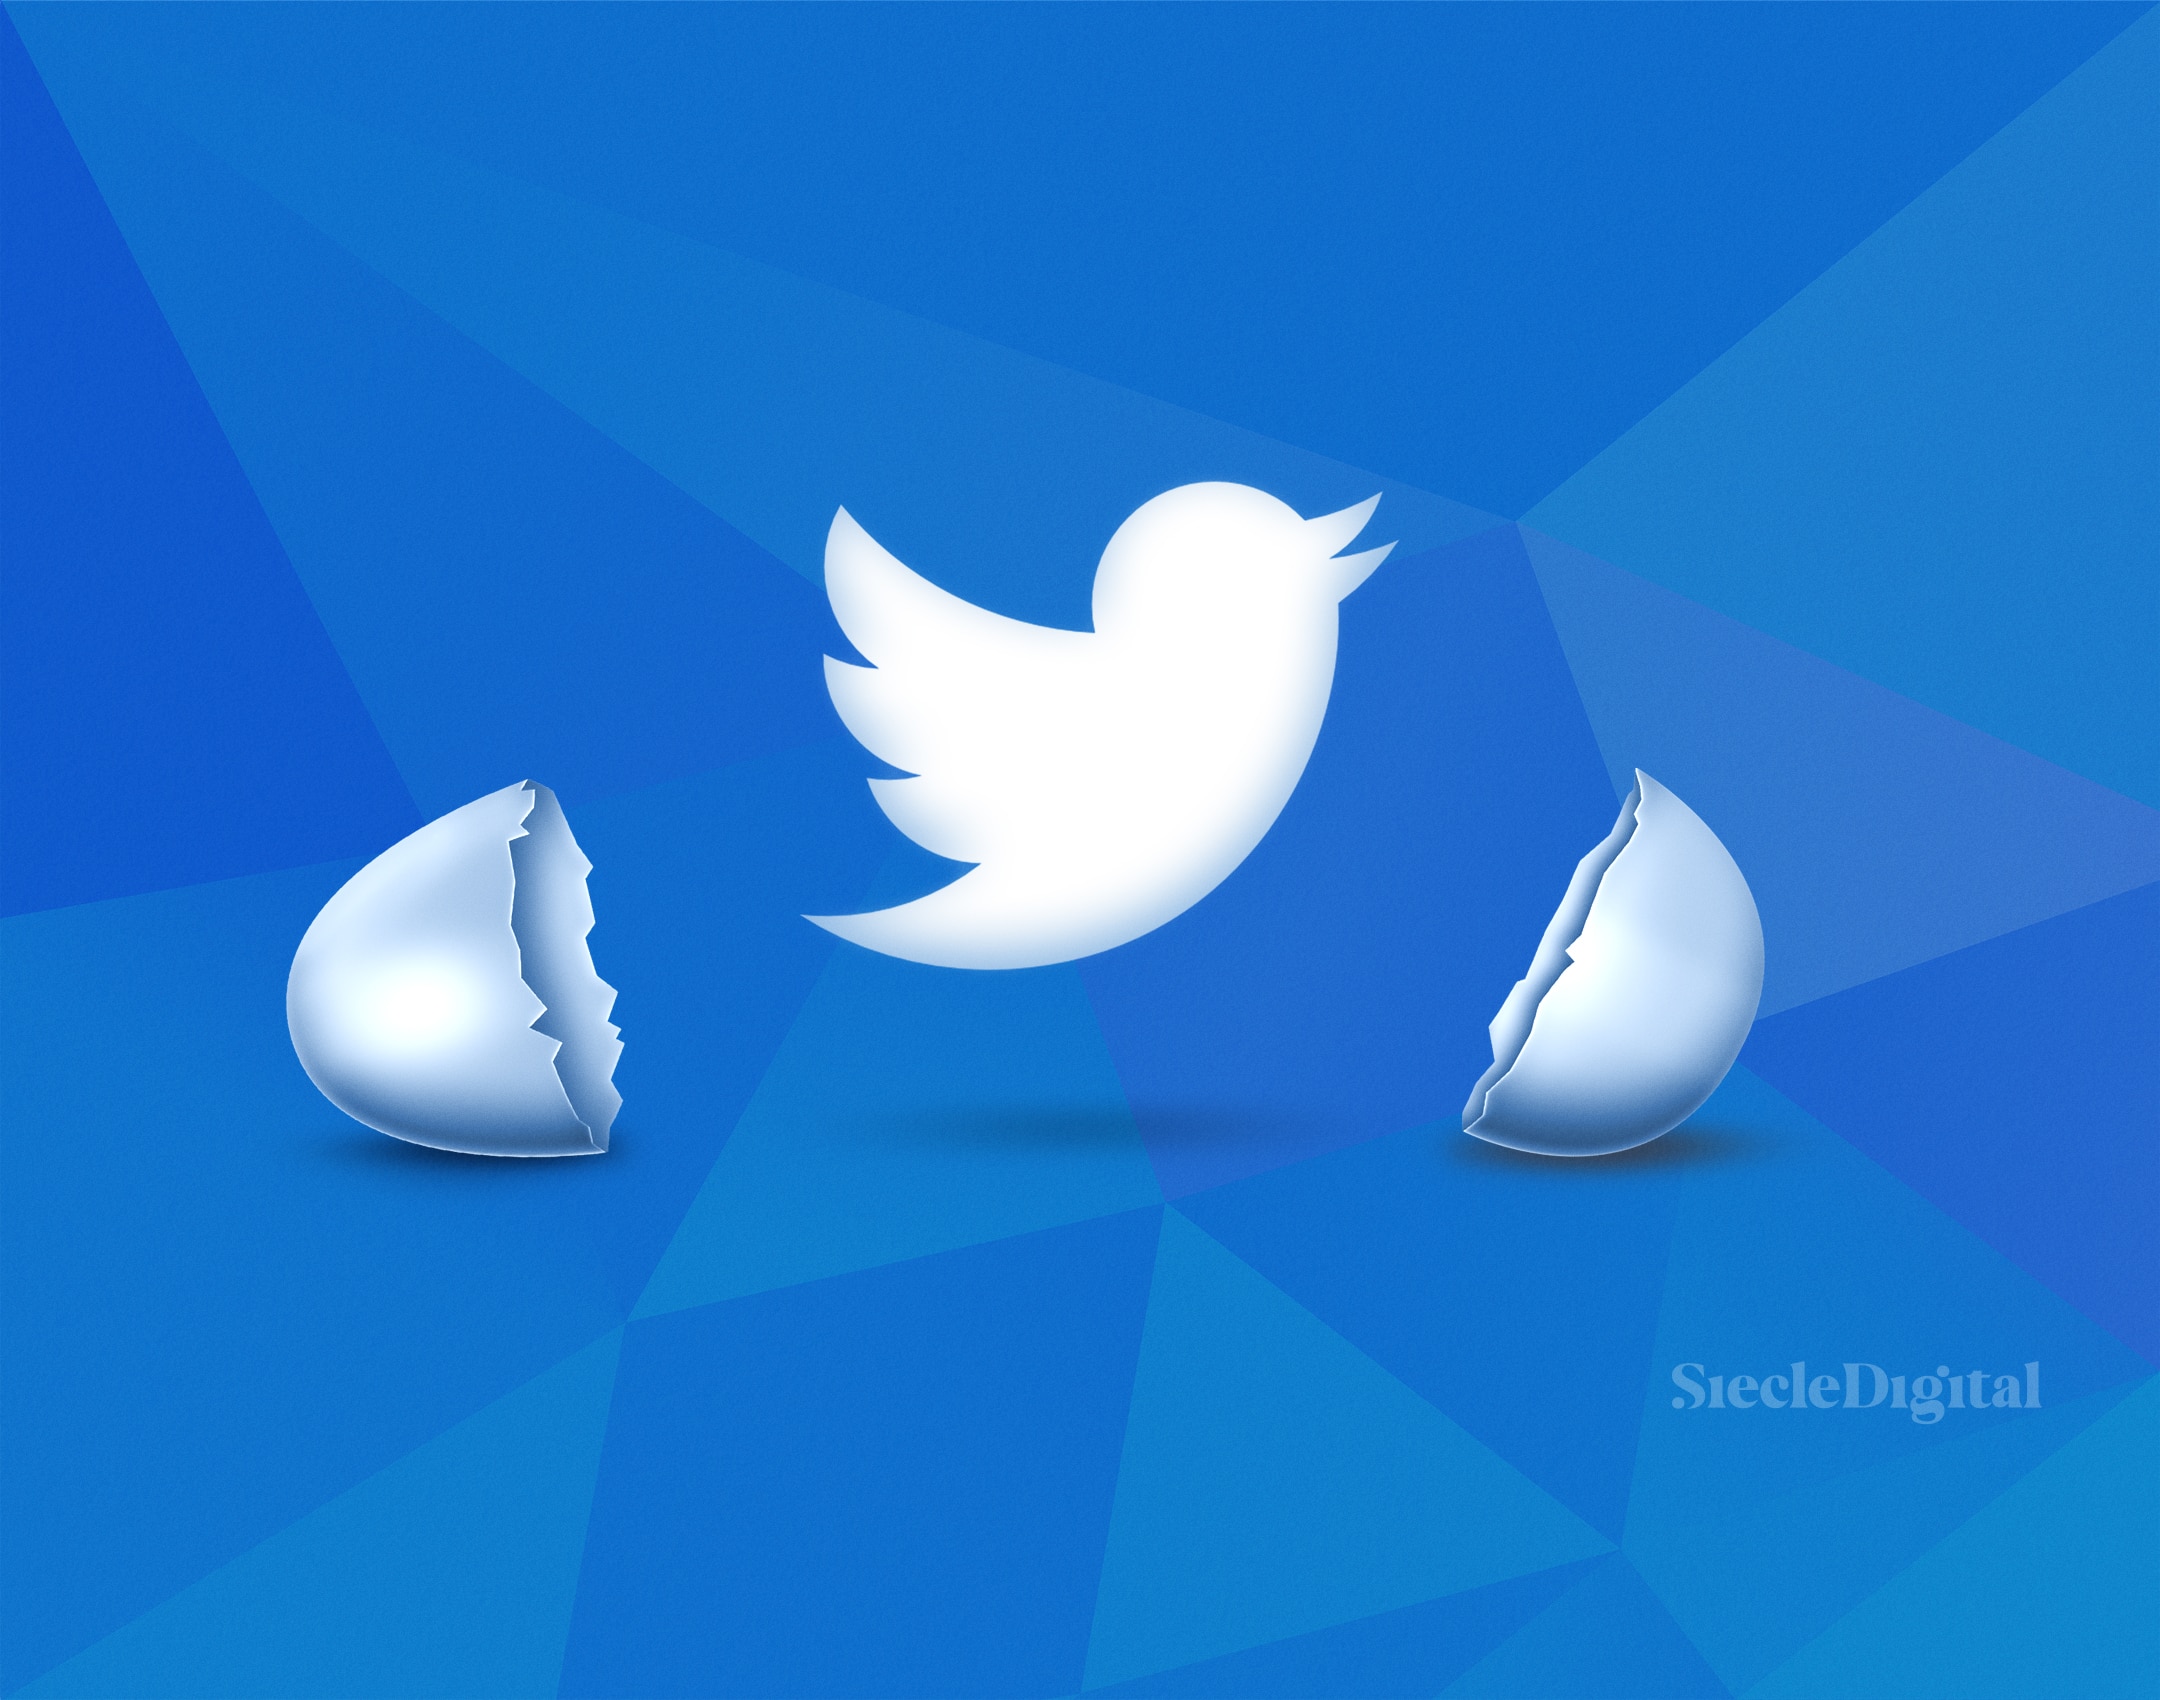 Le logo de twitter sortant d'une coquille d'oeuf